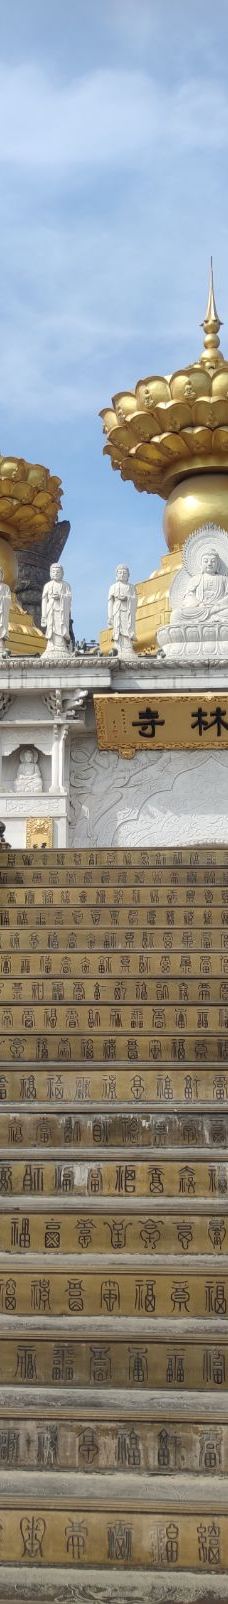 东林寺-上海